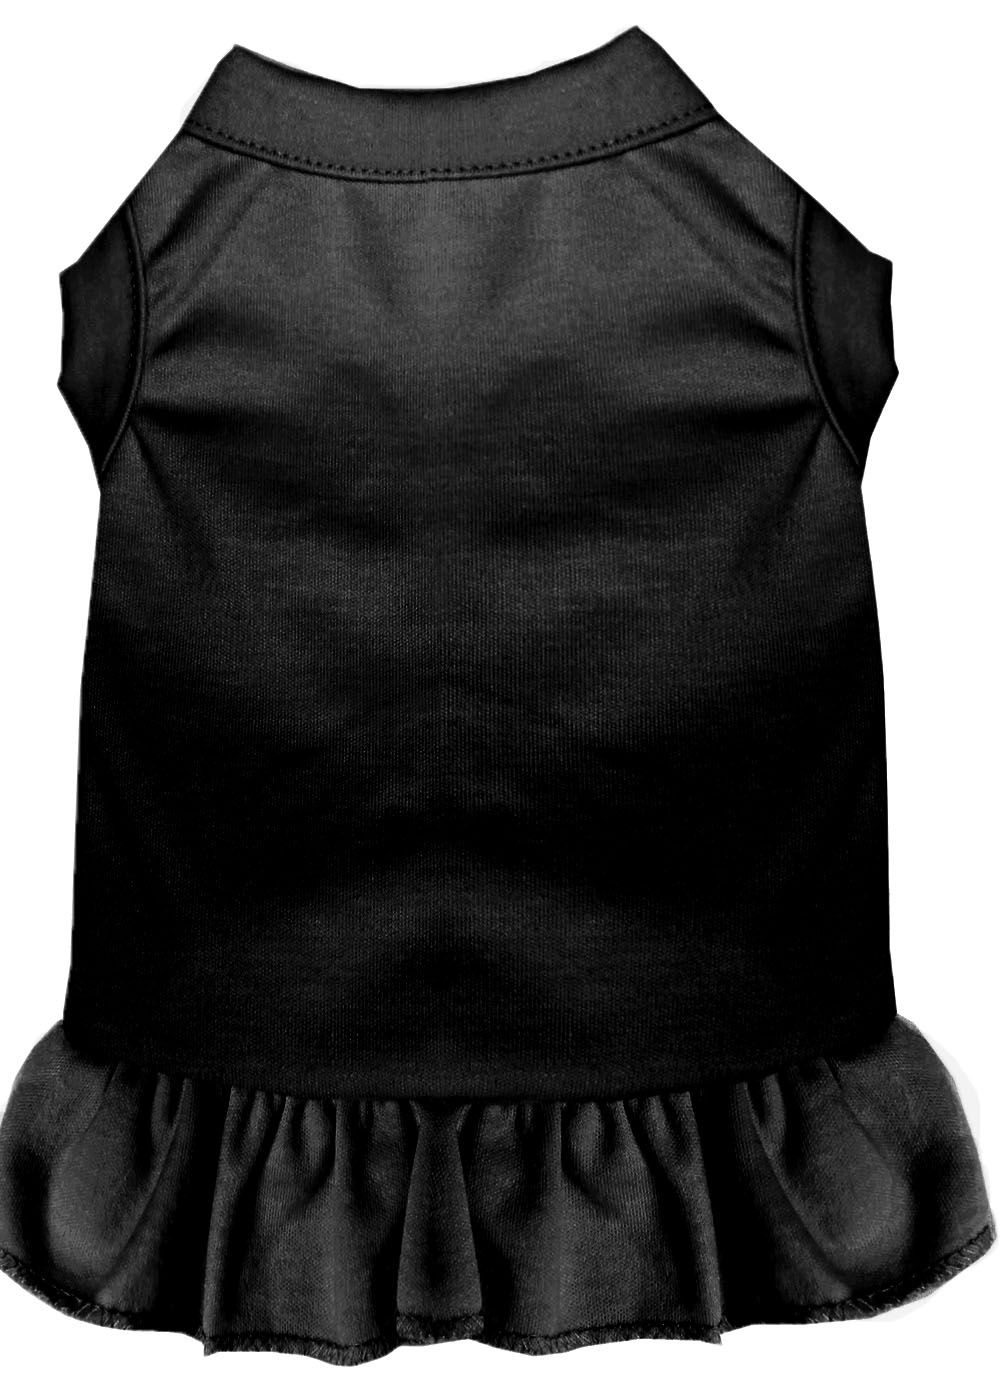 Plain Pet Dress Black 4X